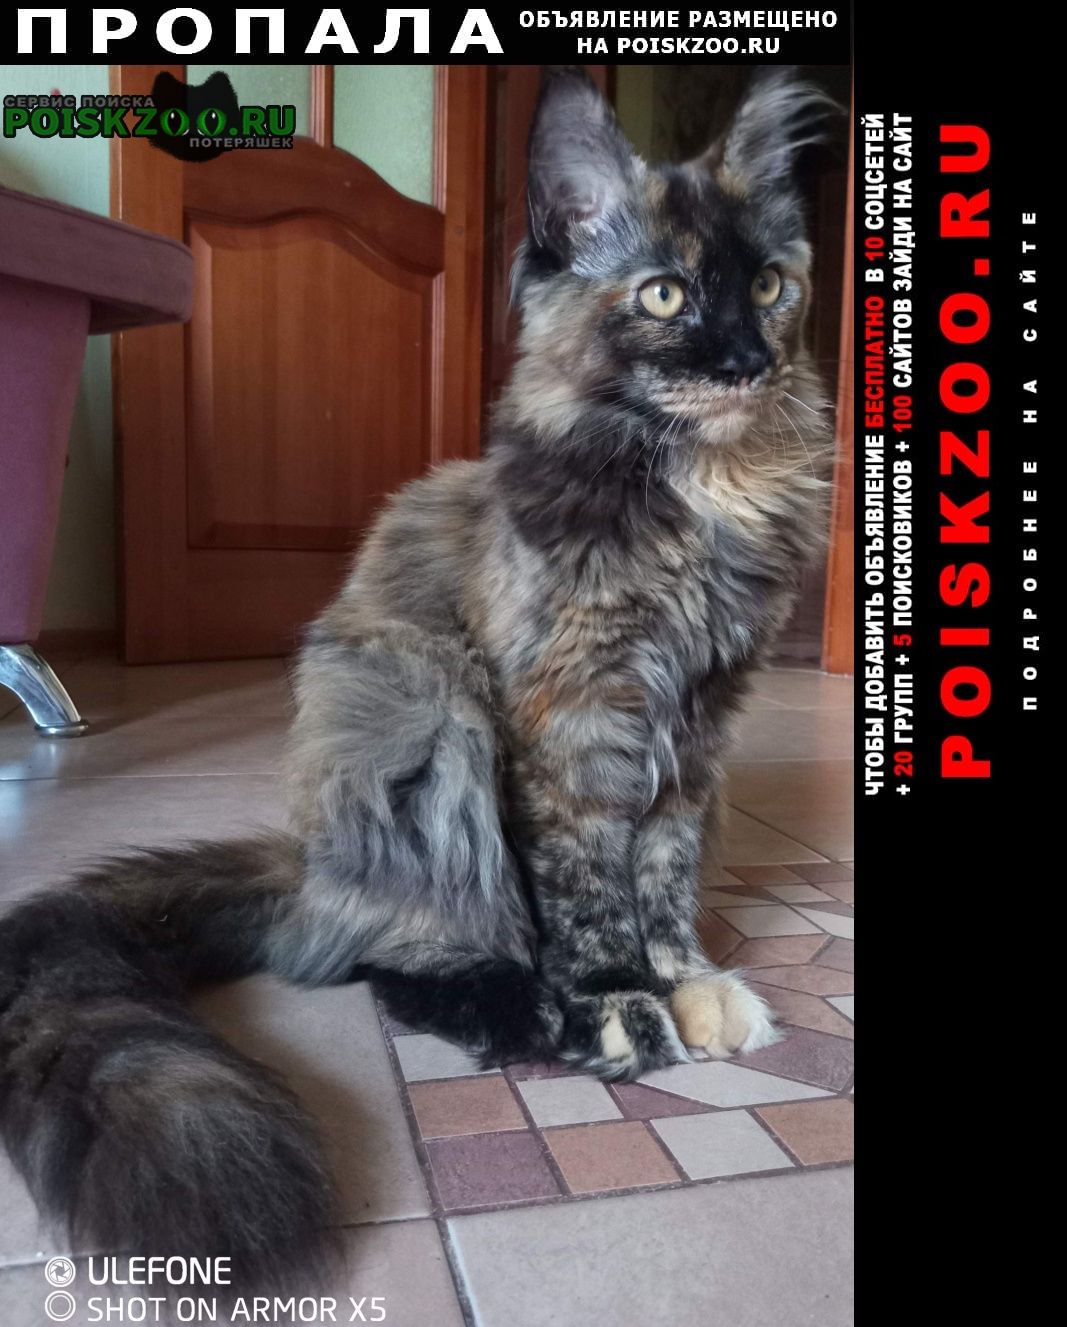 Санкт-Петербург Пропала кошка потерялась